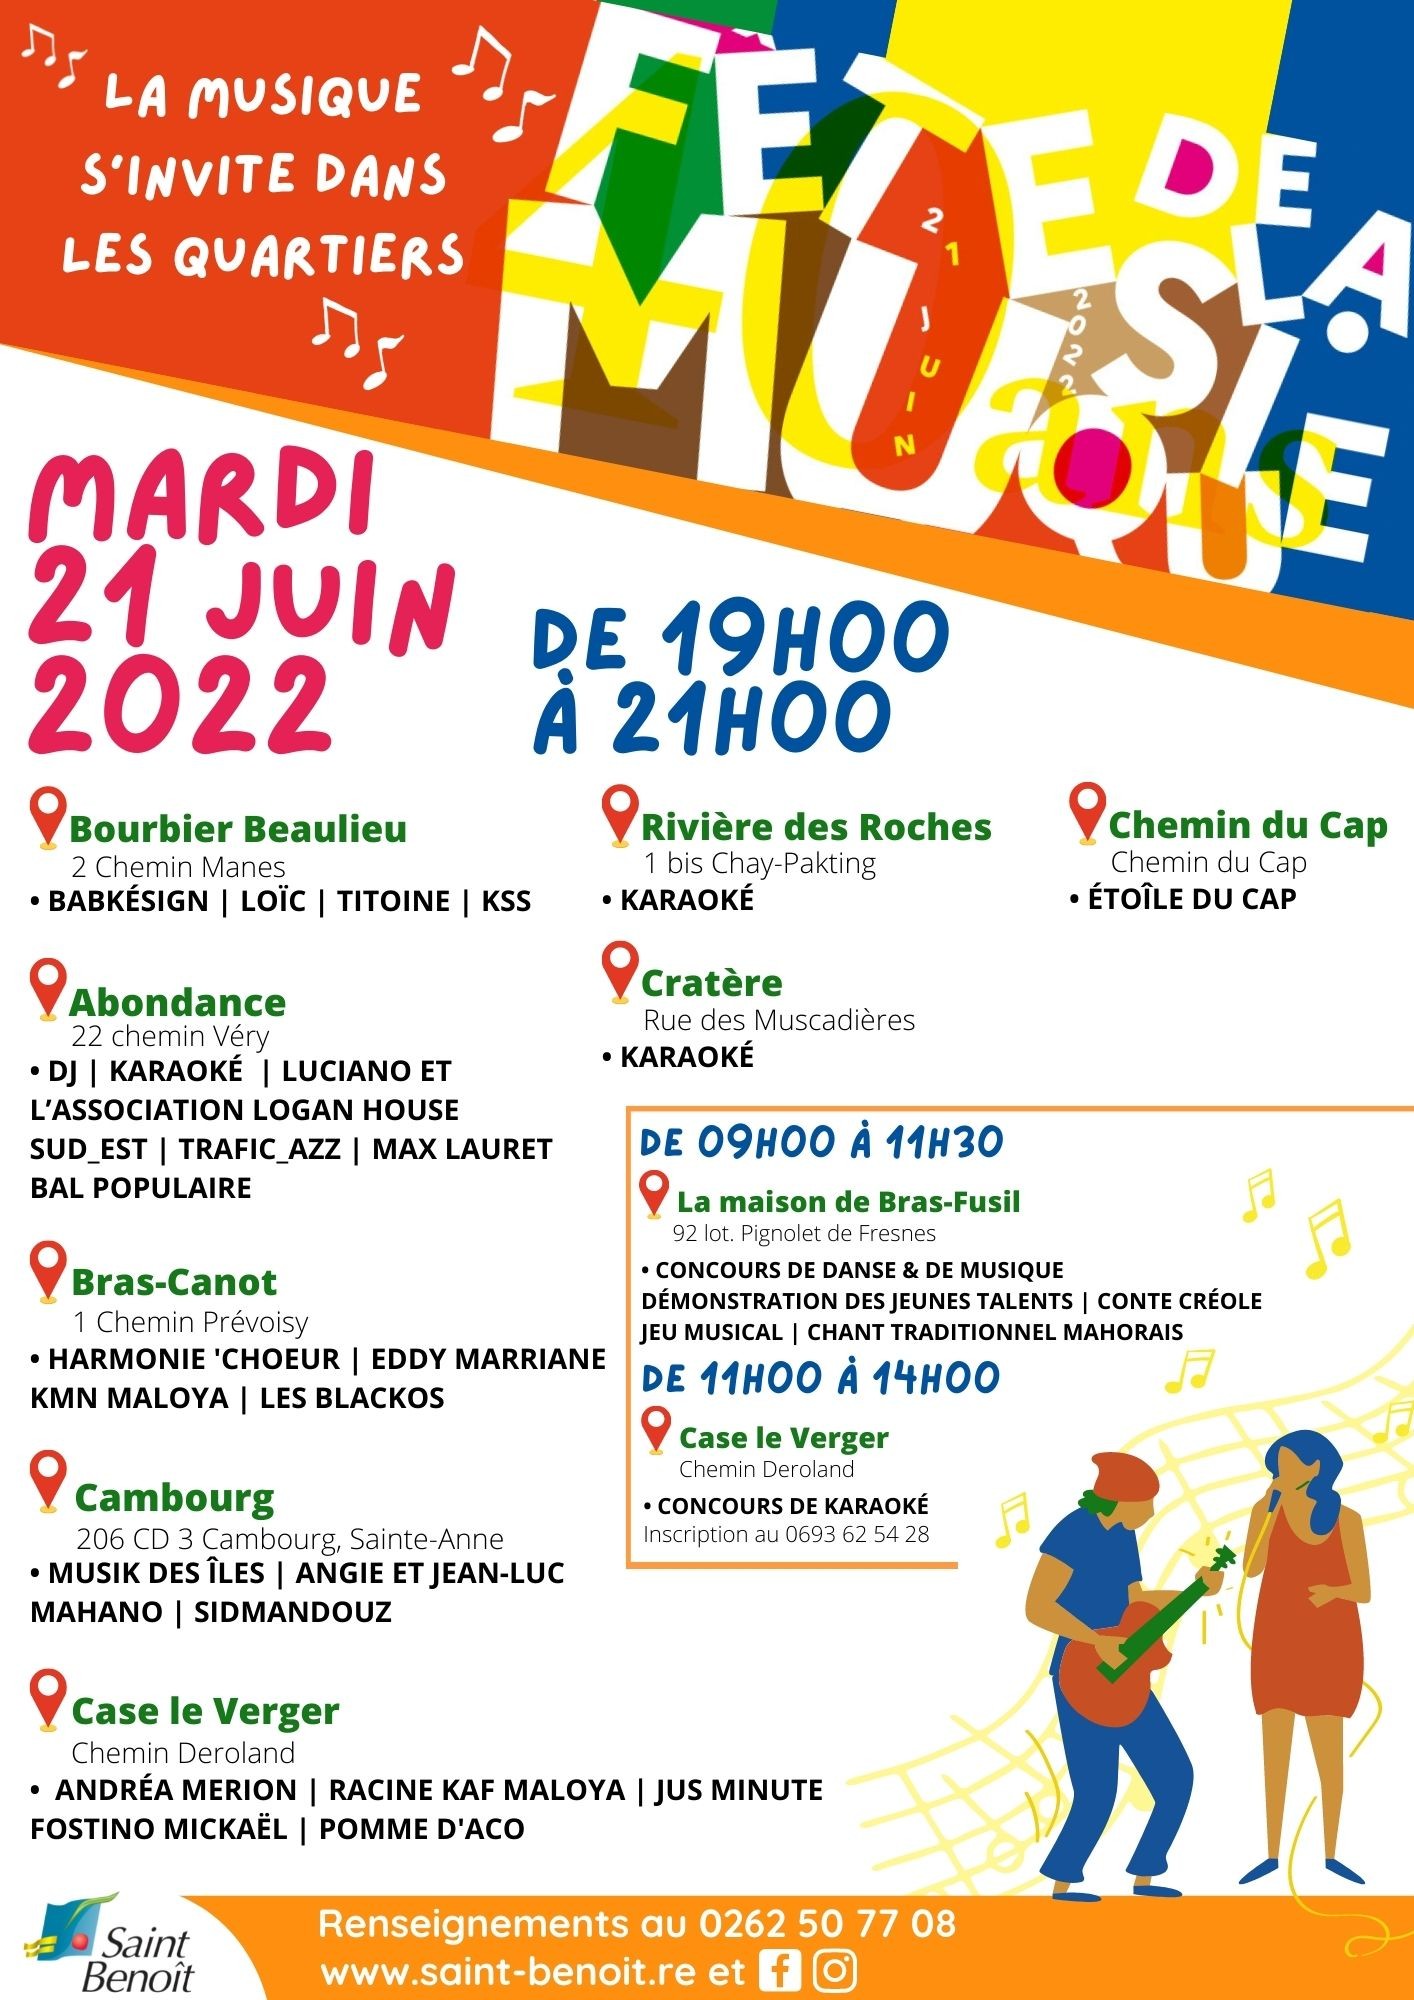 La fête de la musique s’invite dans vos quartiers le mardi 21 juin 2022